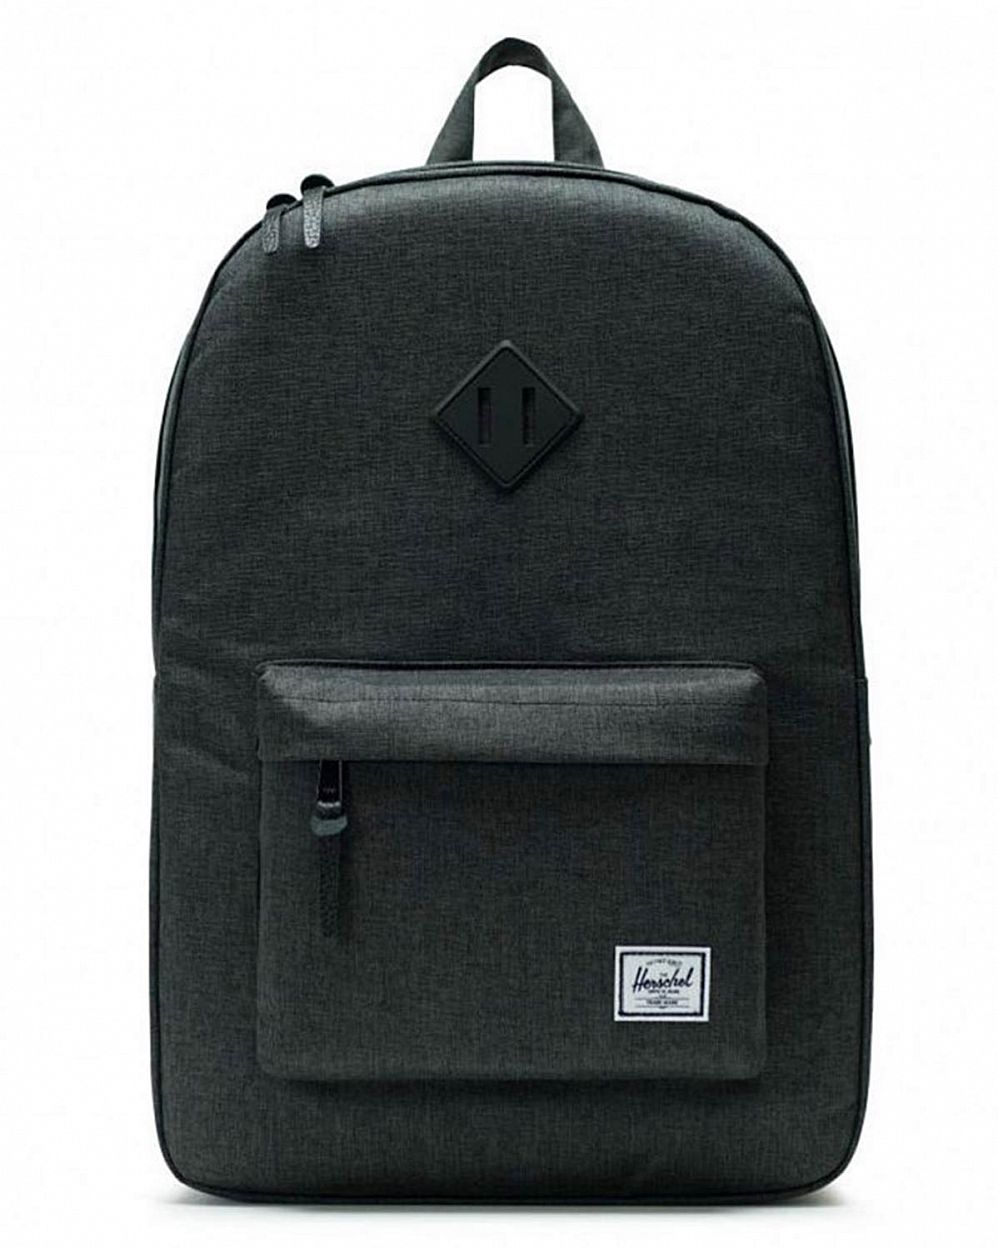 Рюкзак водоотталкивающий с карманом для 15 ноутбука Herschel Heritage Black Crosshatch Black отзывы